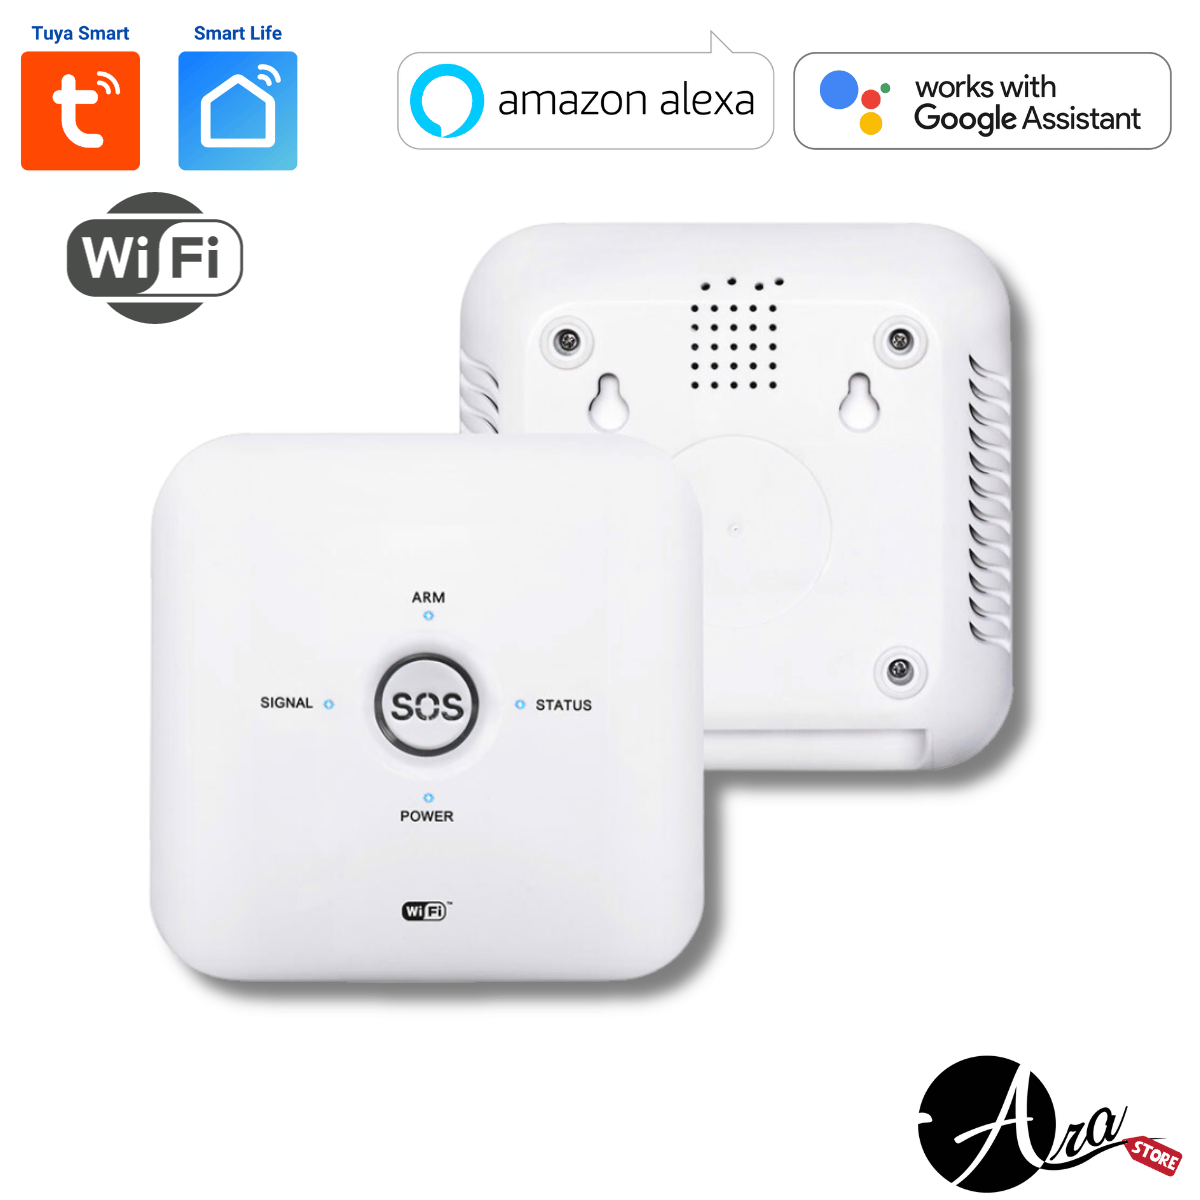 Alarma inteligente Wifi / GSM Tuya Smart / Smart Life